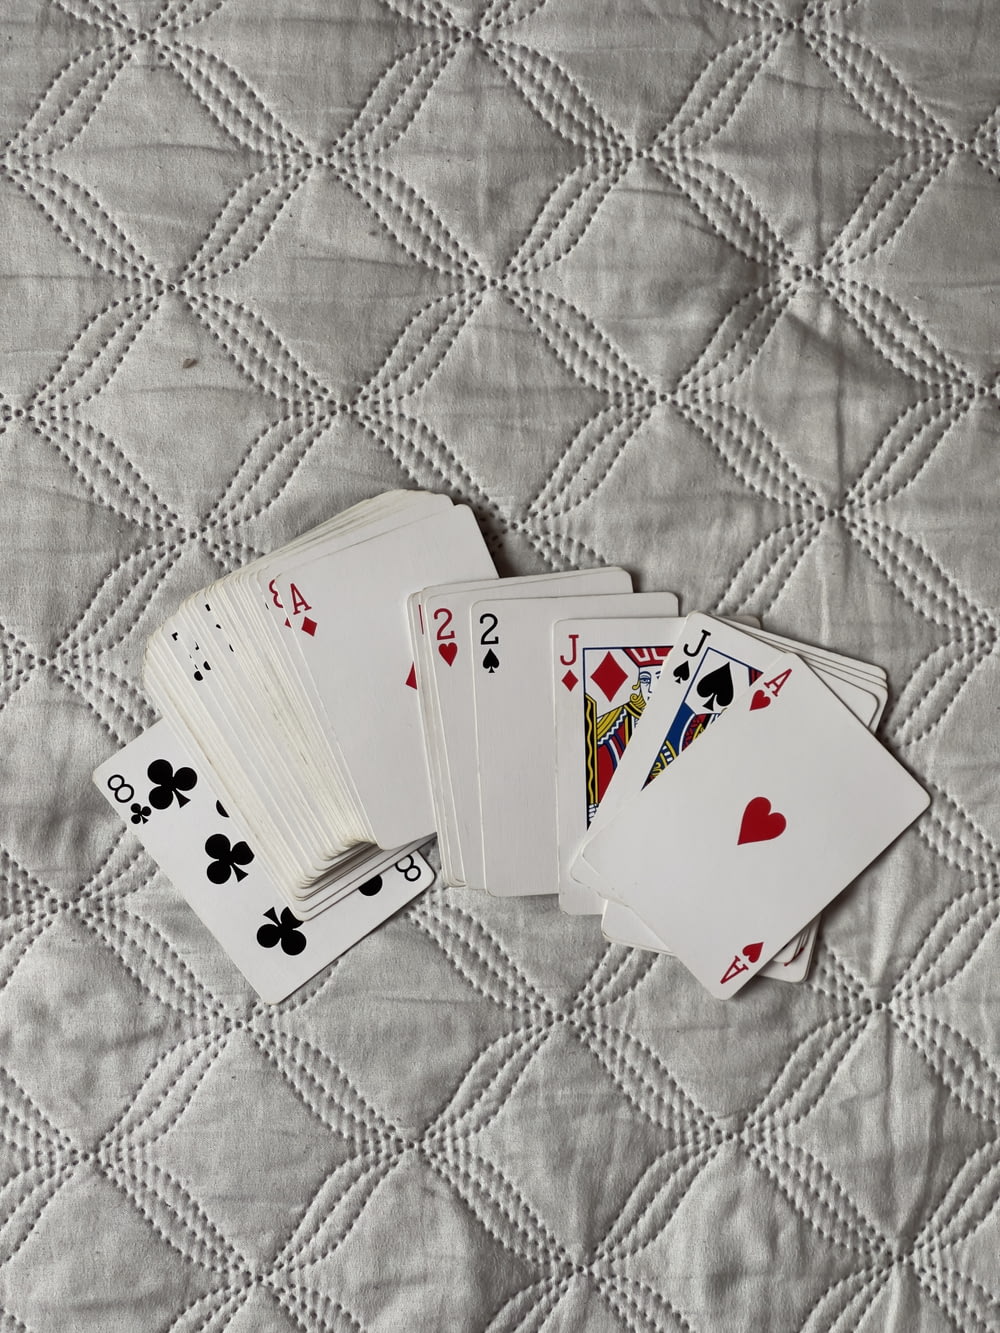 Quattro carte da gioco sono posate su una trapunta